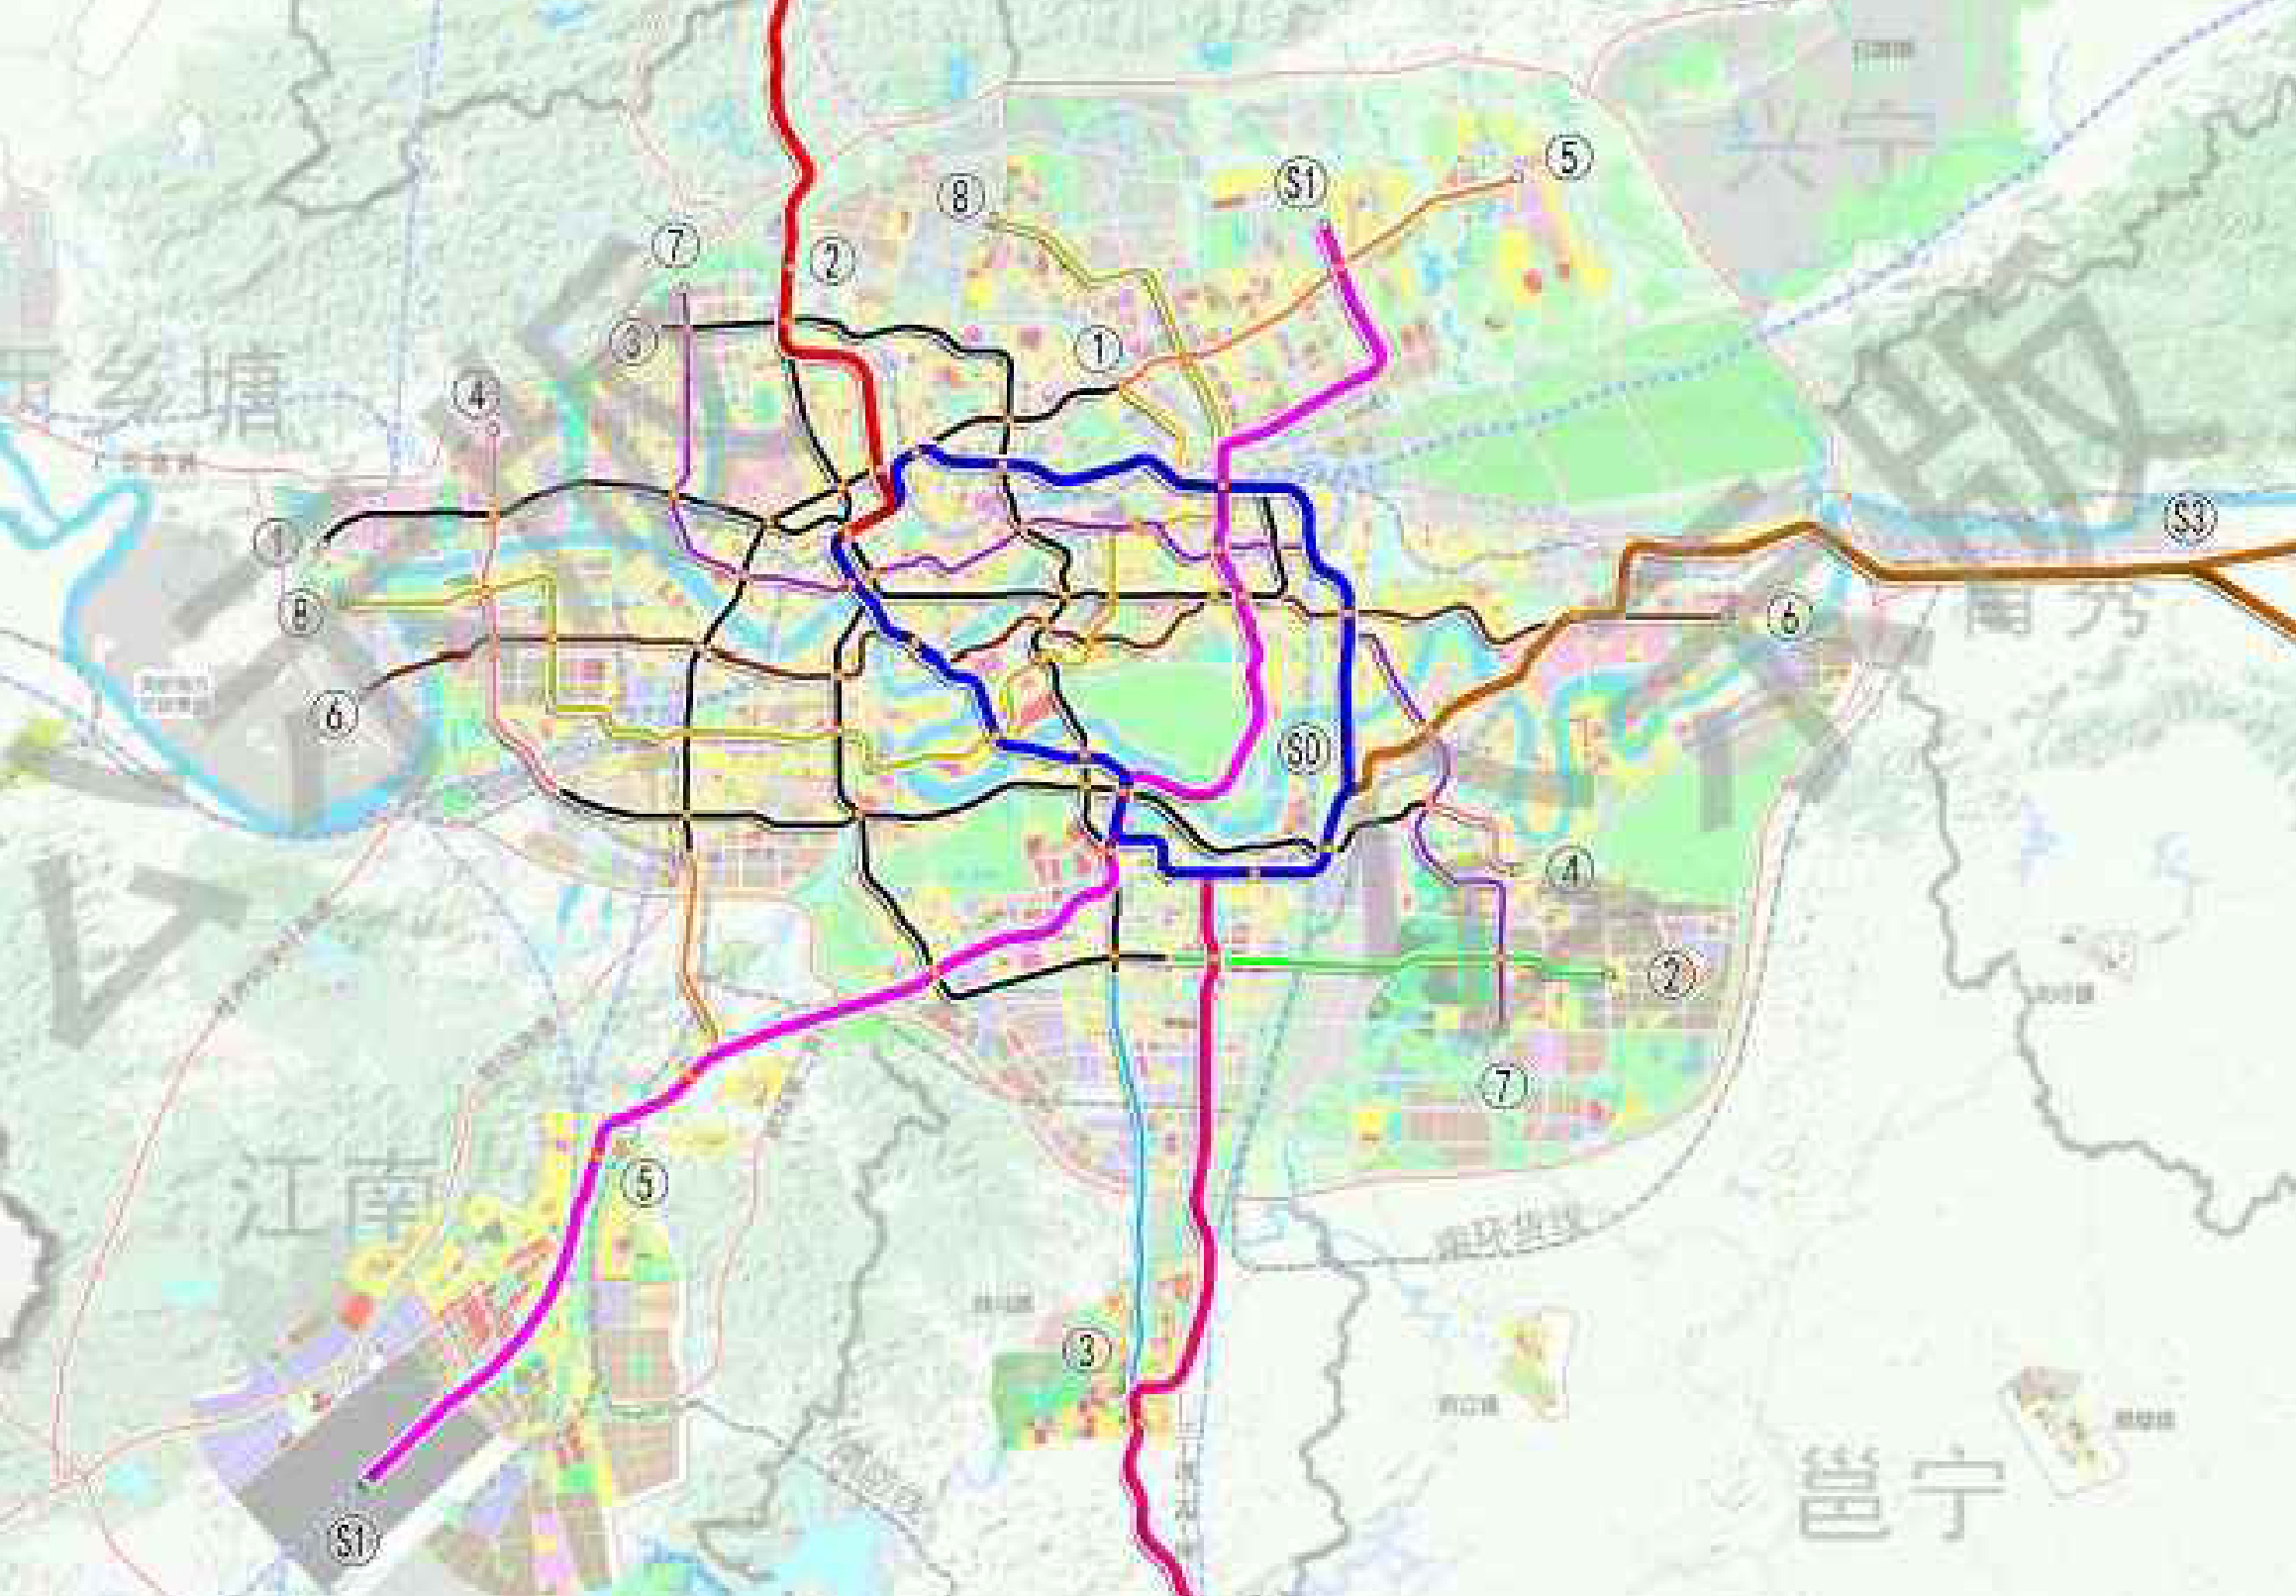 二,规划期线网方案 规划期(2020-2035年)线网方案是基于南宁市已建